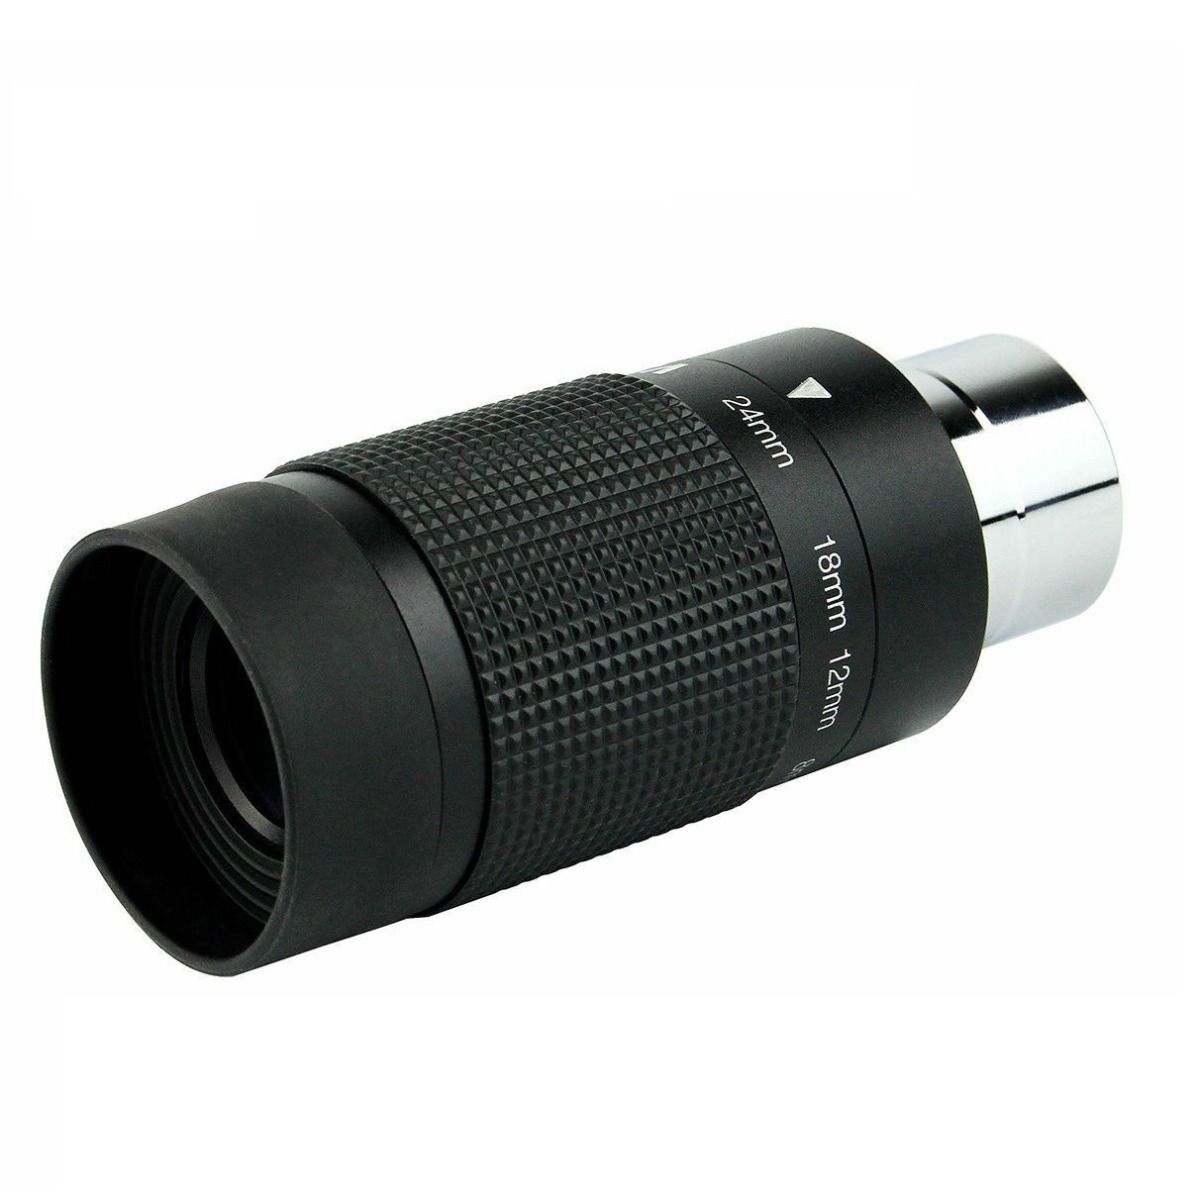 Celestron 1.25 inch 8-24mm Eyepiece Zoom